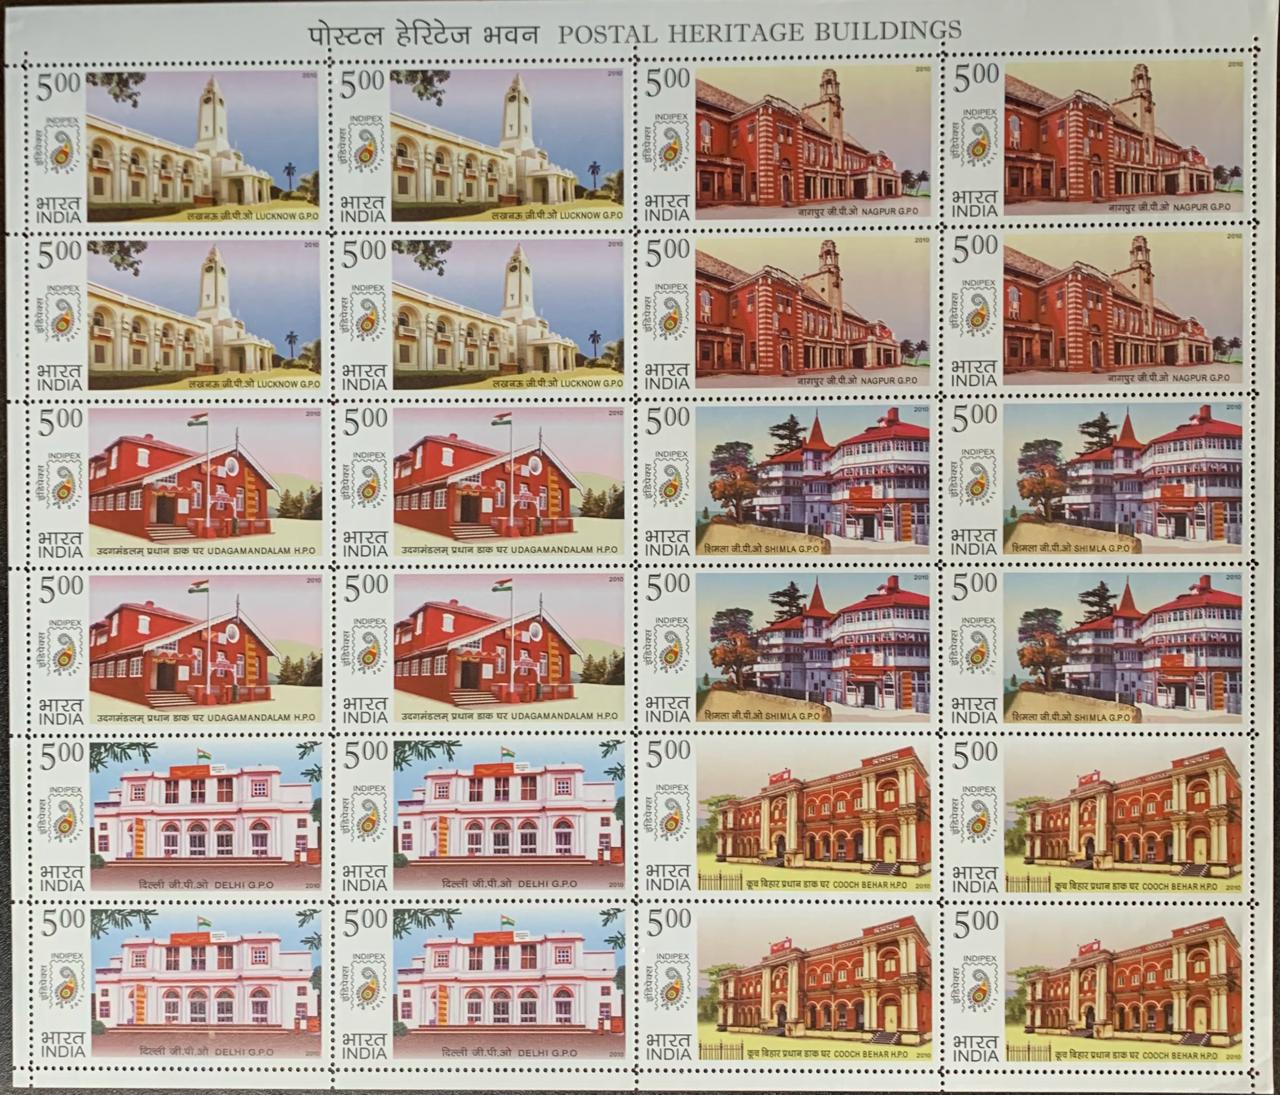 India 2010 Postal Heritage Buildings Sheetlet